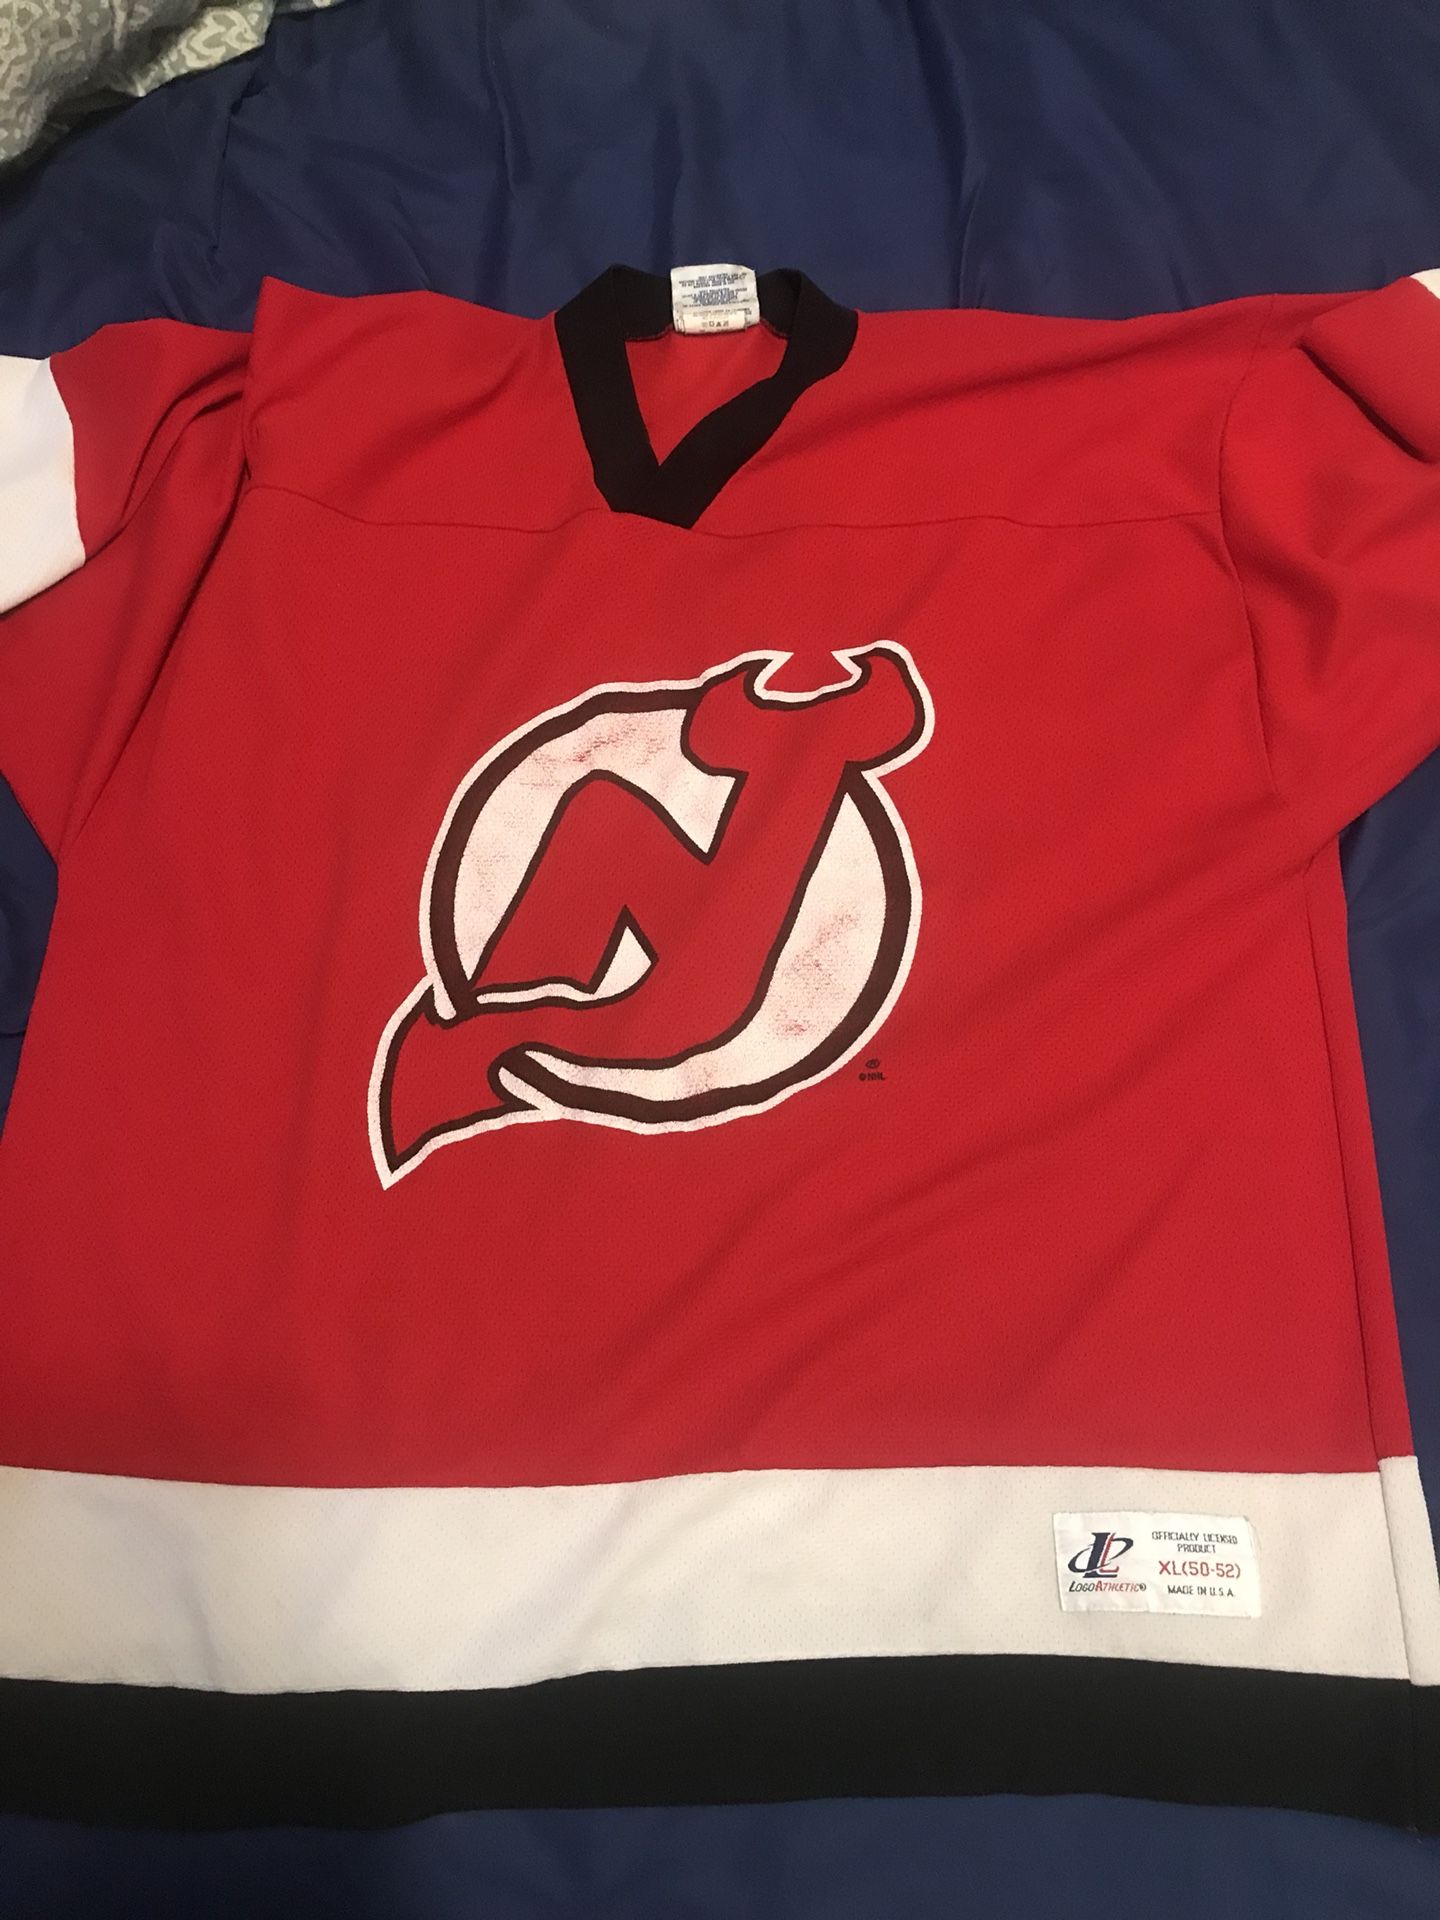 Vintage New Jersey devils hockey jersey